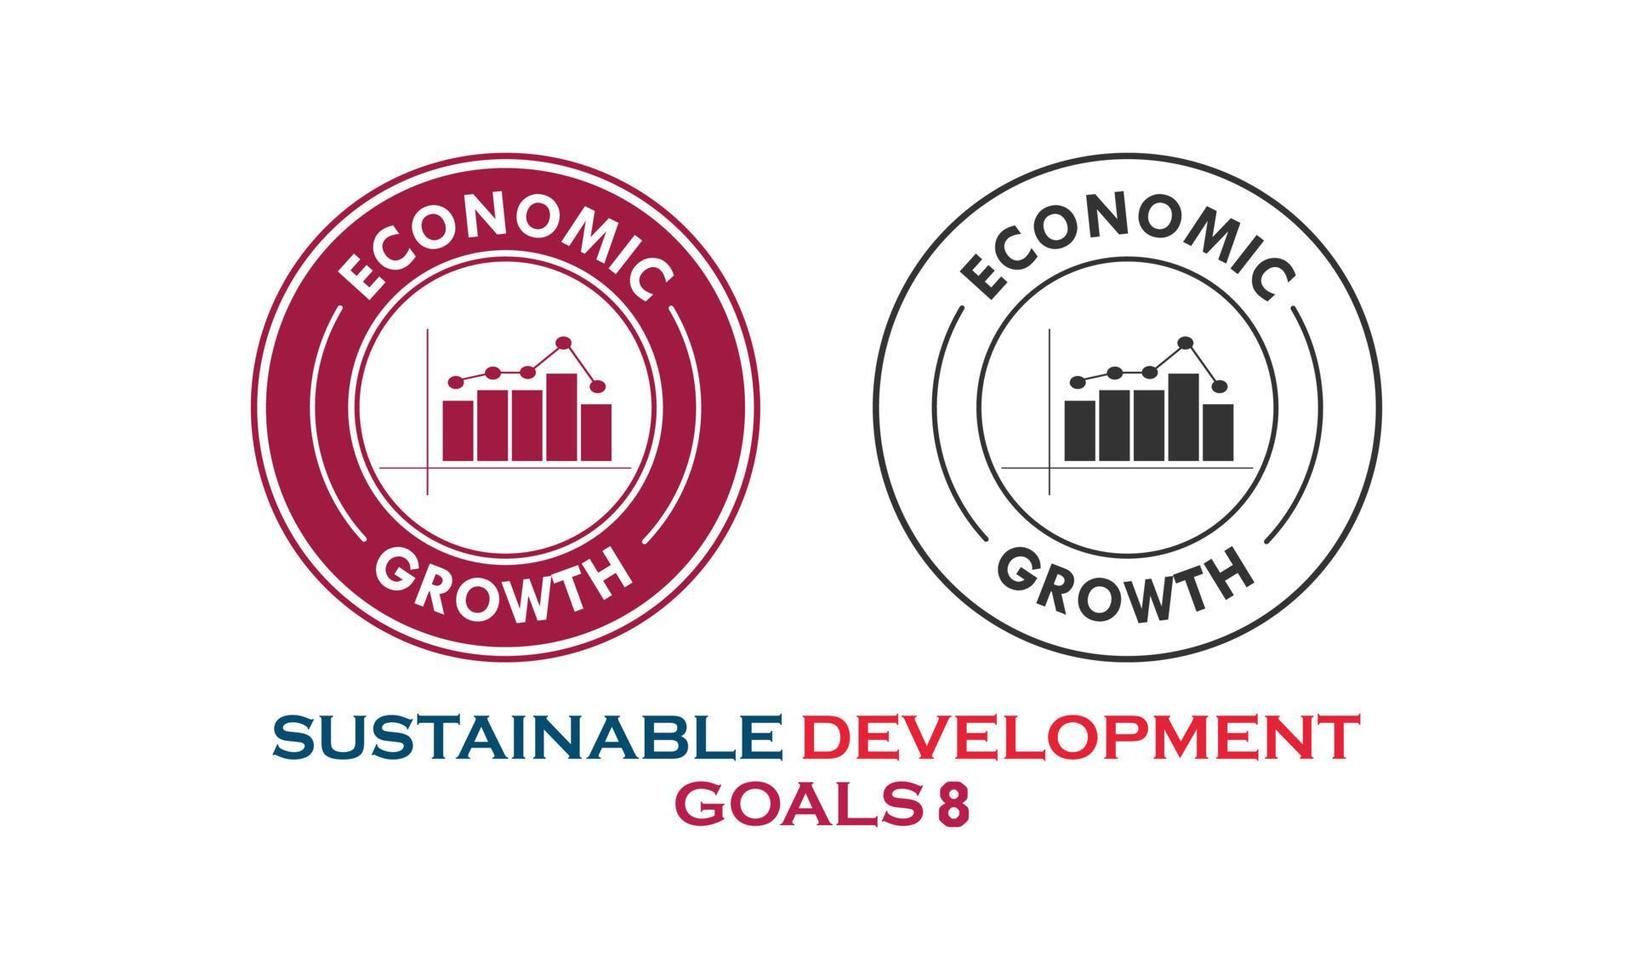 obiettivi di sviluppo sostenibile, voce crescita economica vettore